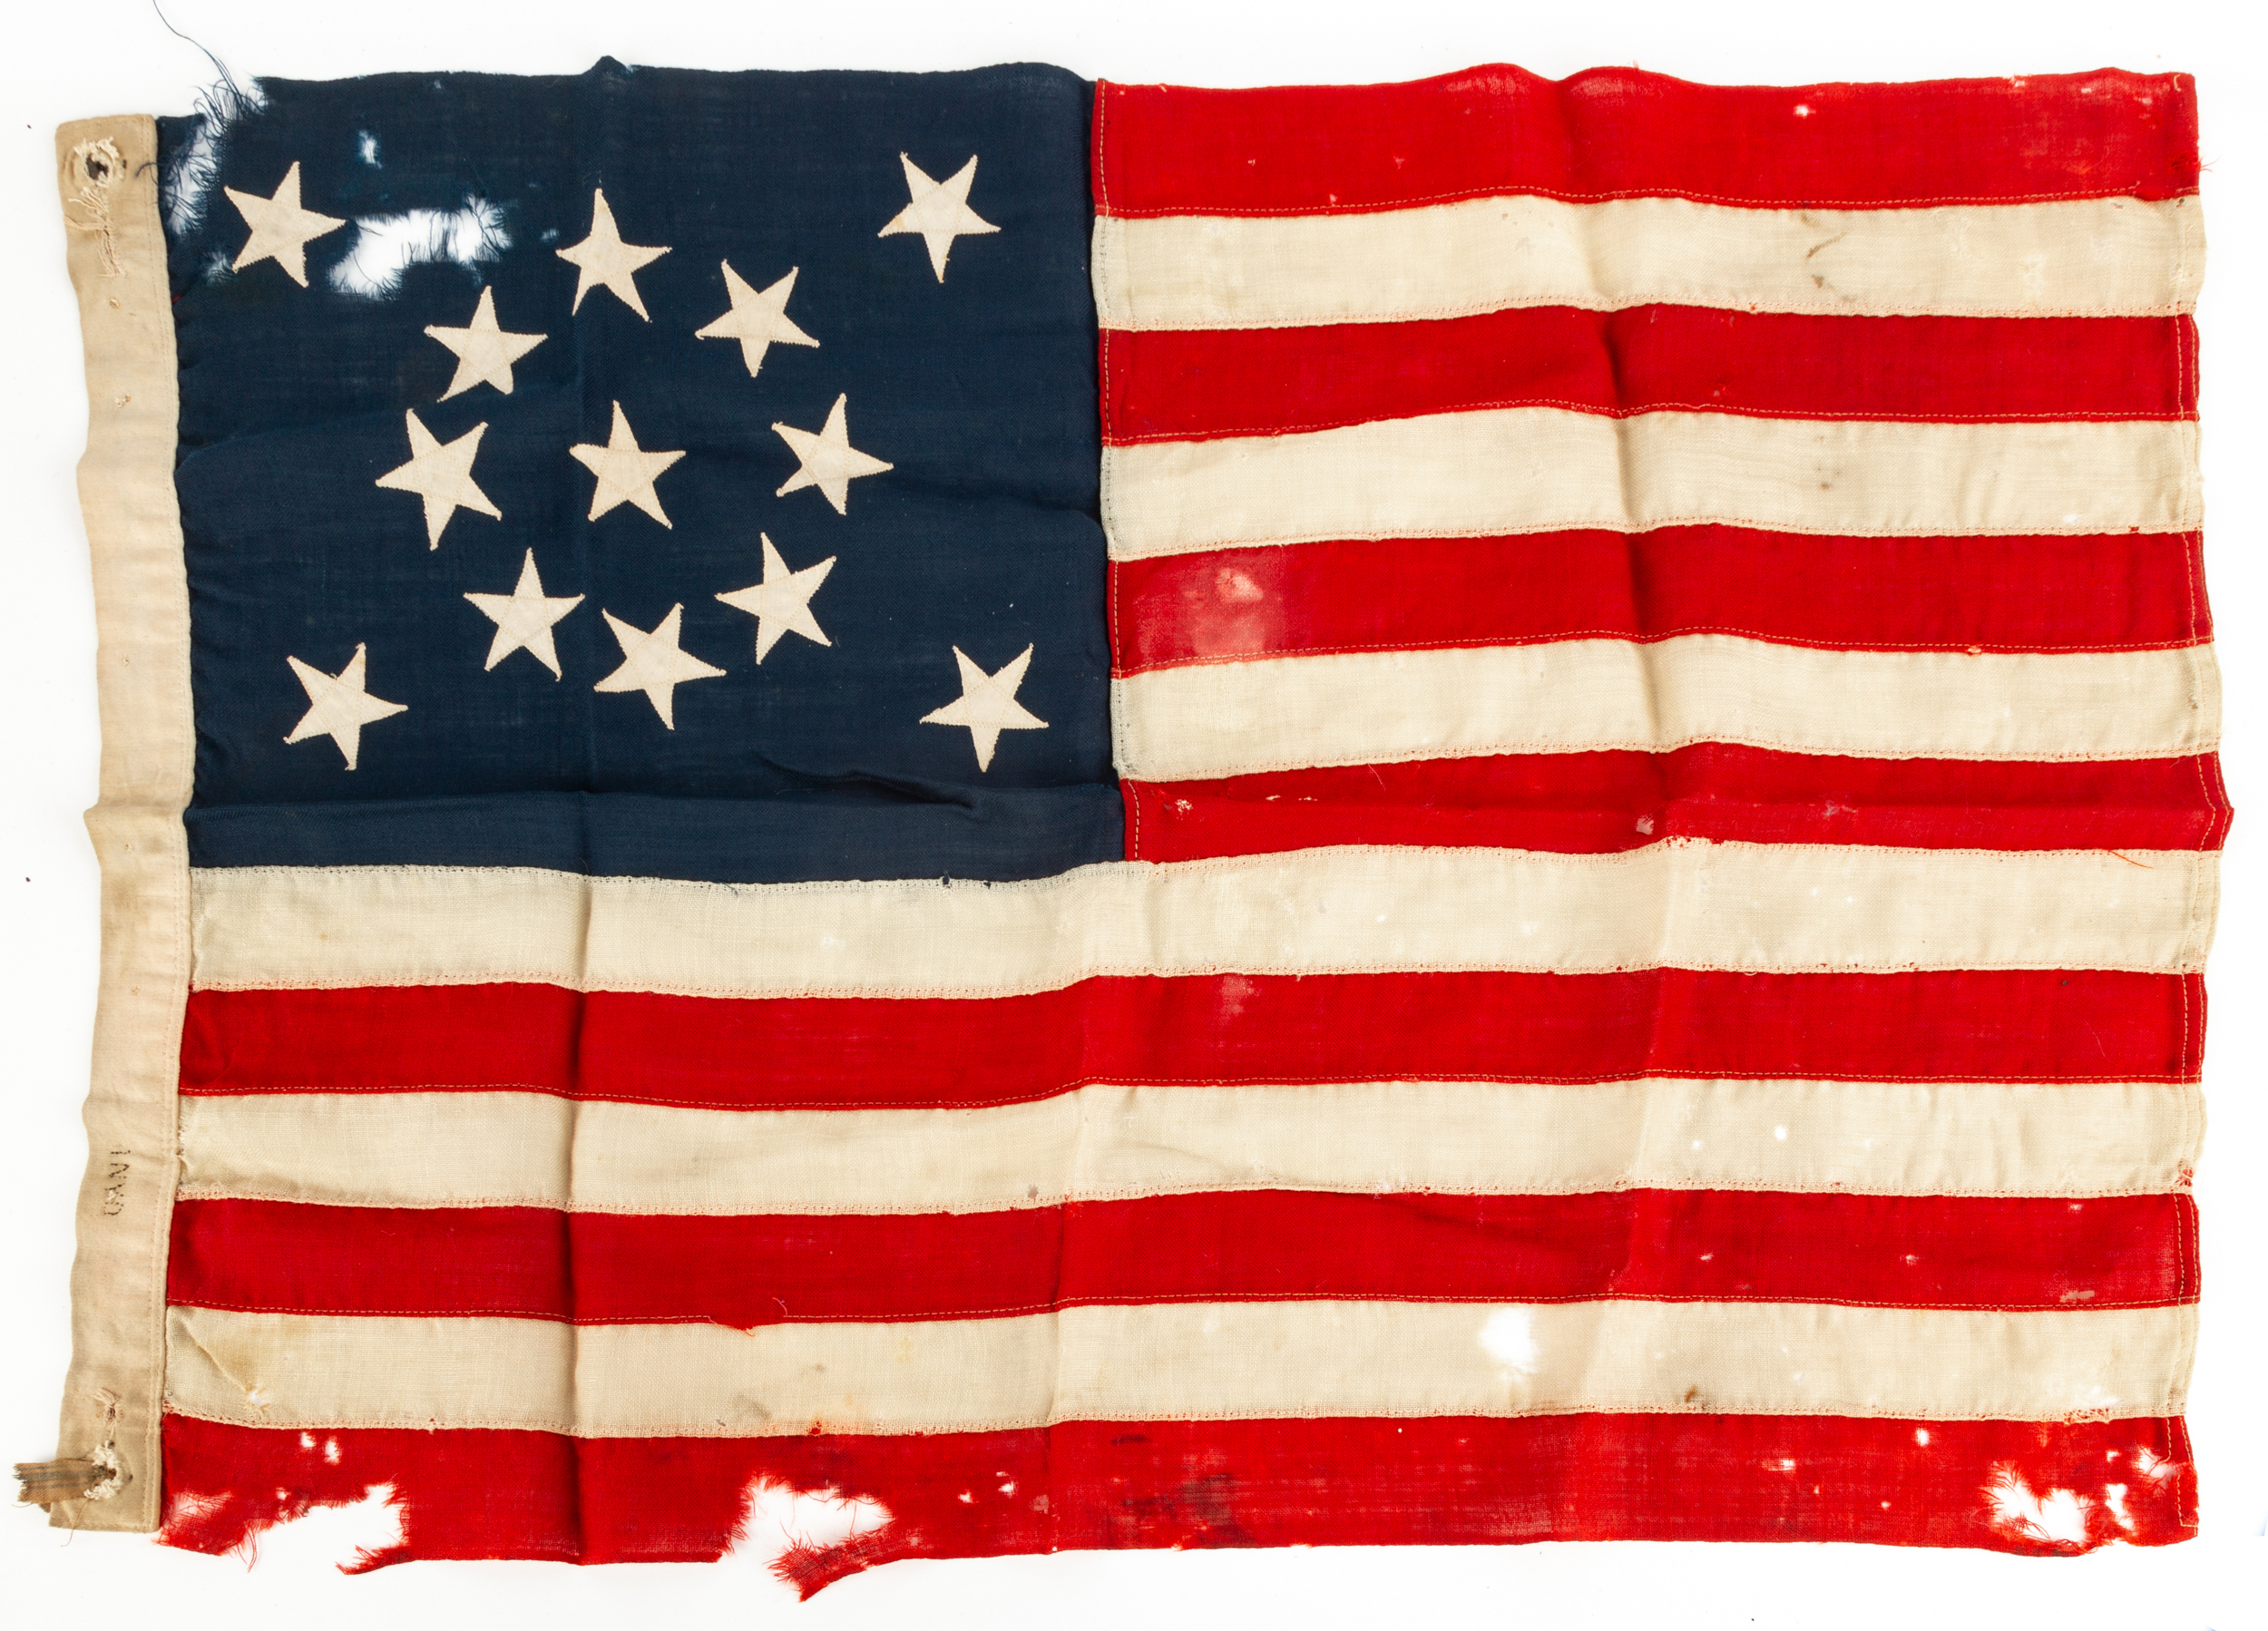 13 STAR AMERICAN FLAG Wreath pattern 35305f